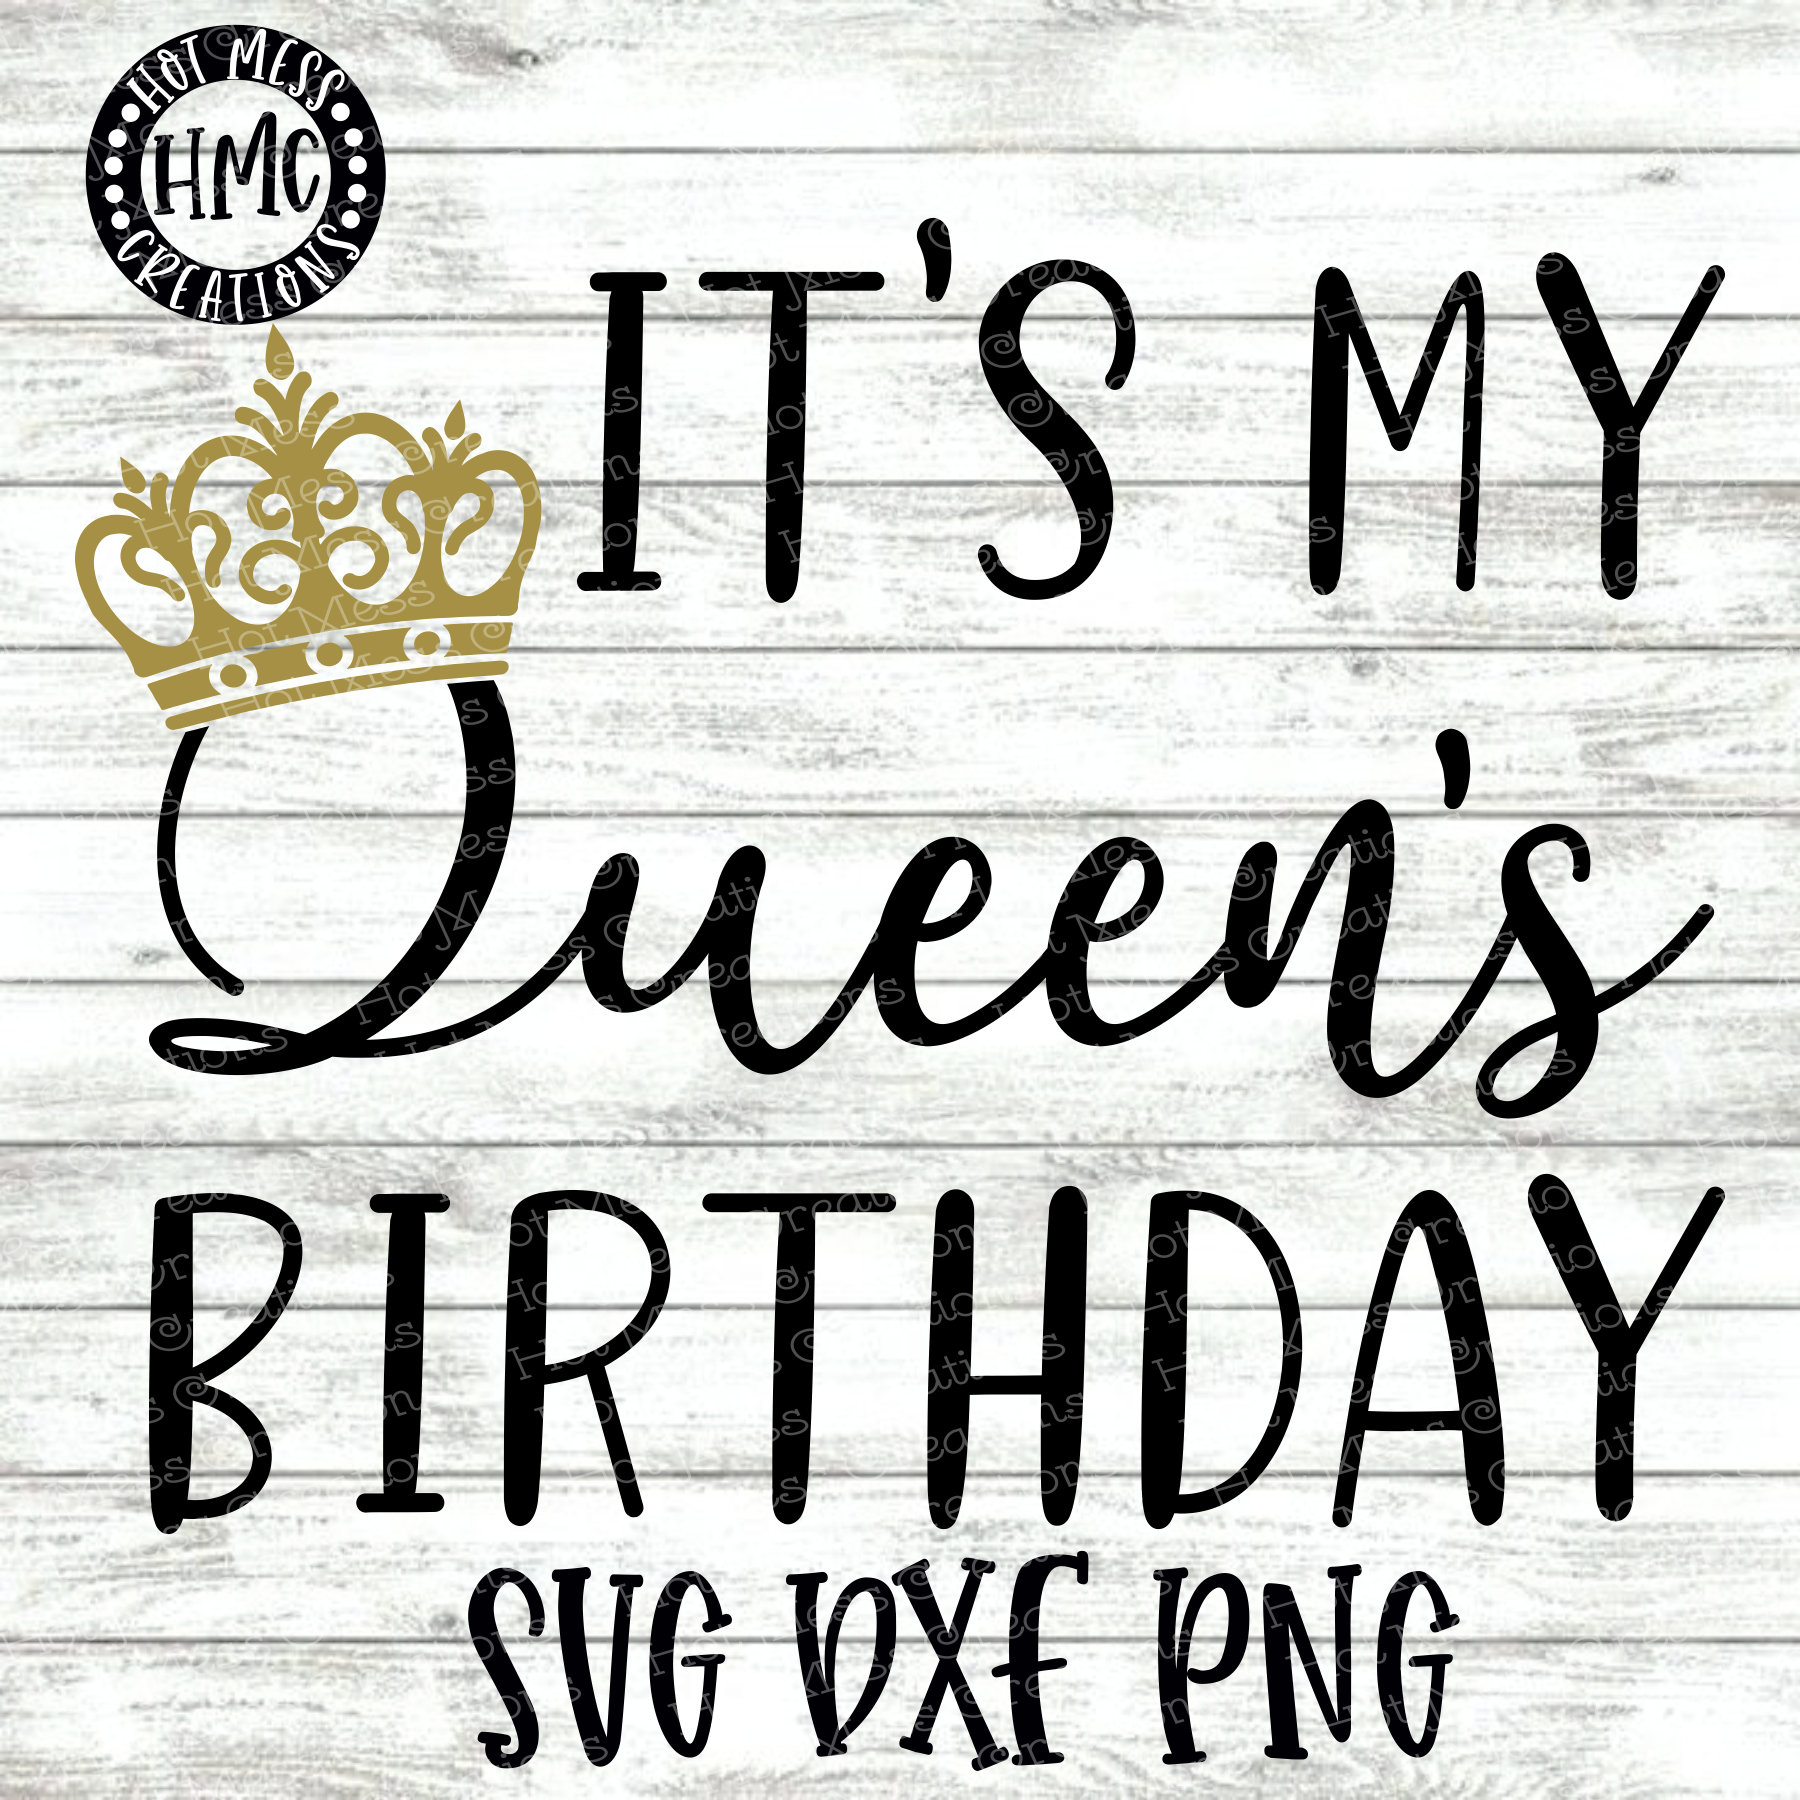 Birthday Queen SVG DXF PNG - It's My Queens Birthday - Birthday Queen Shirt  Design - Birthday Girl Design - Digital Download